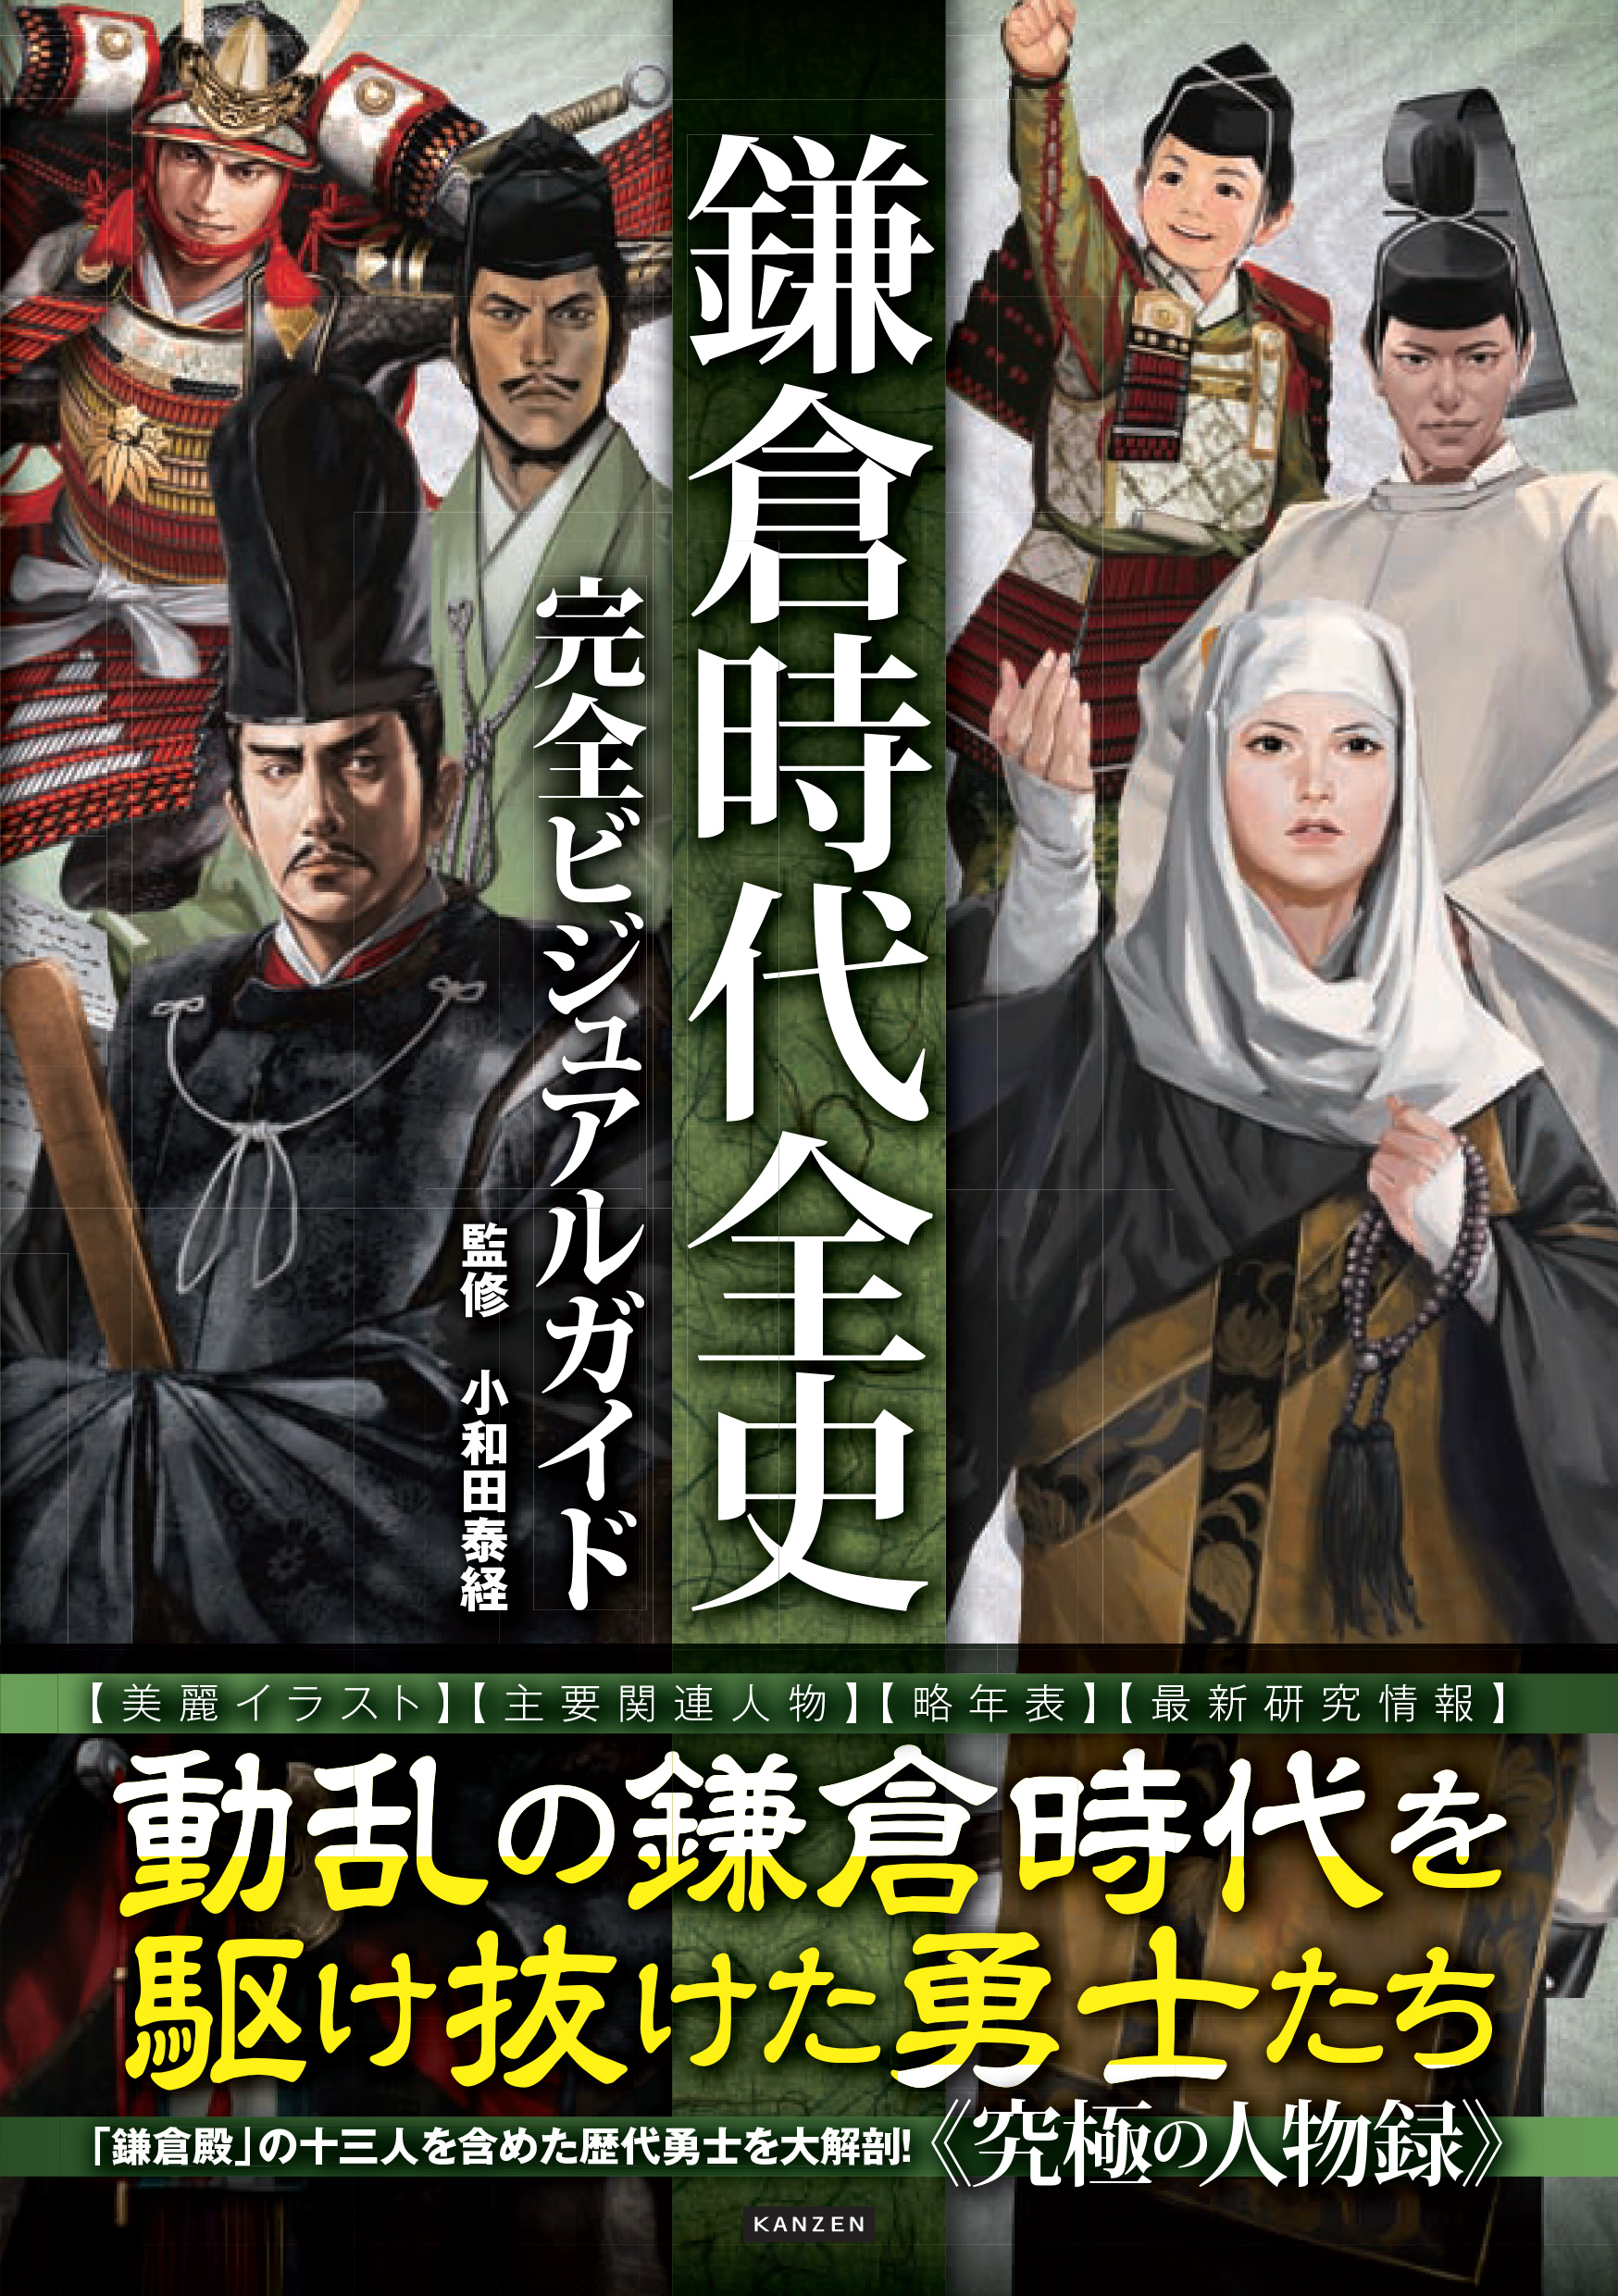 鎌倉殿の13人 を含めた歴代勇士を大解剖 鎌倉時代全史完全ビジュアルガイド が本日発売 Newscast